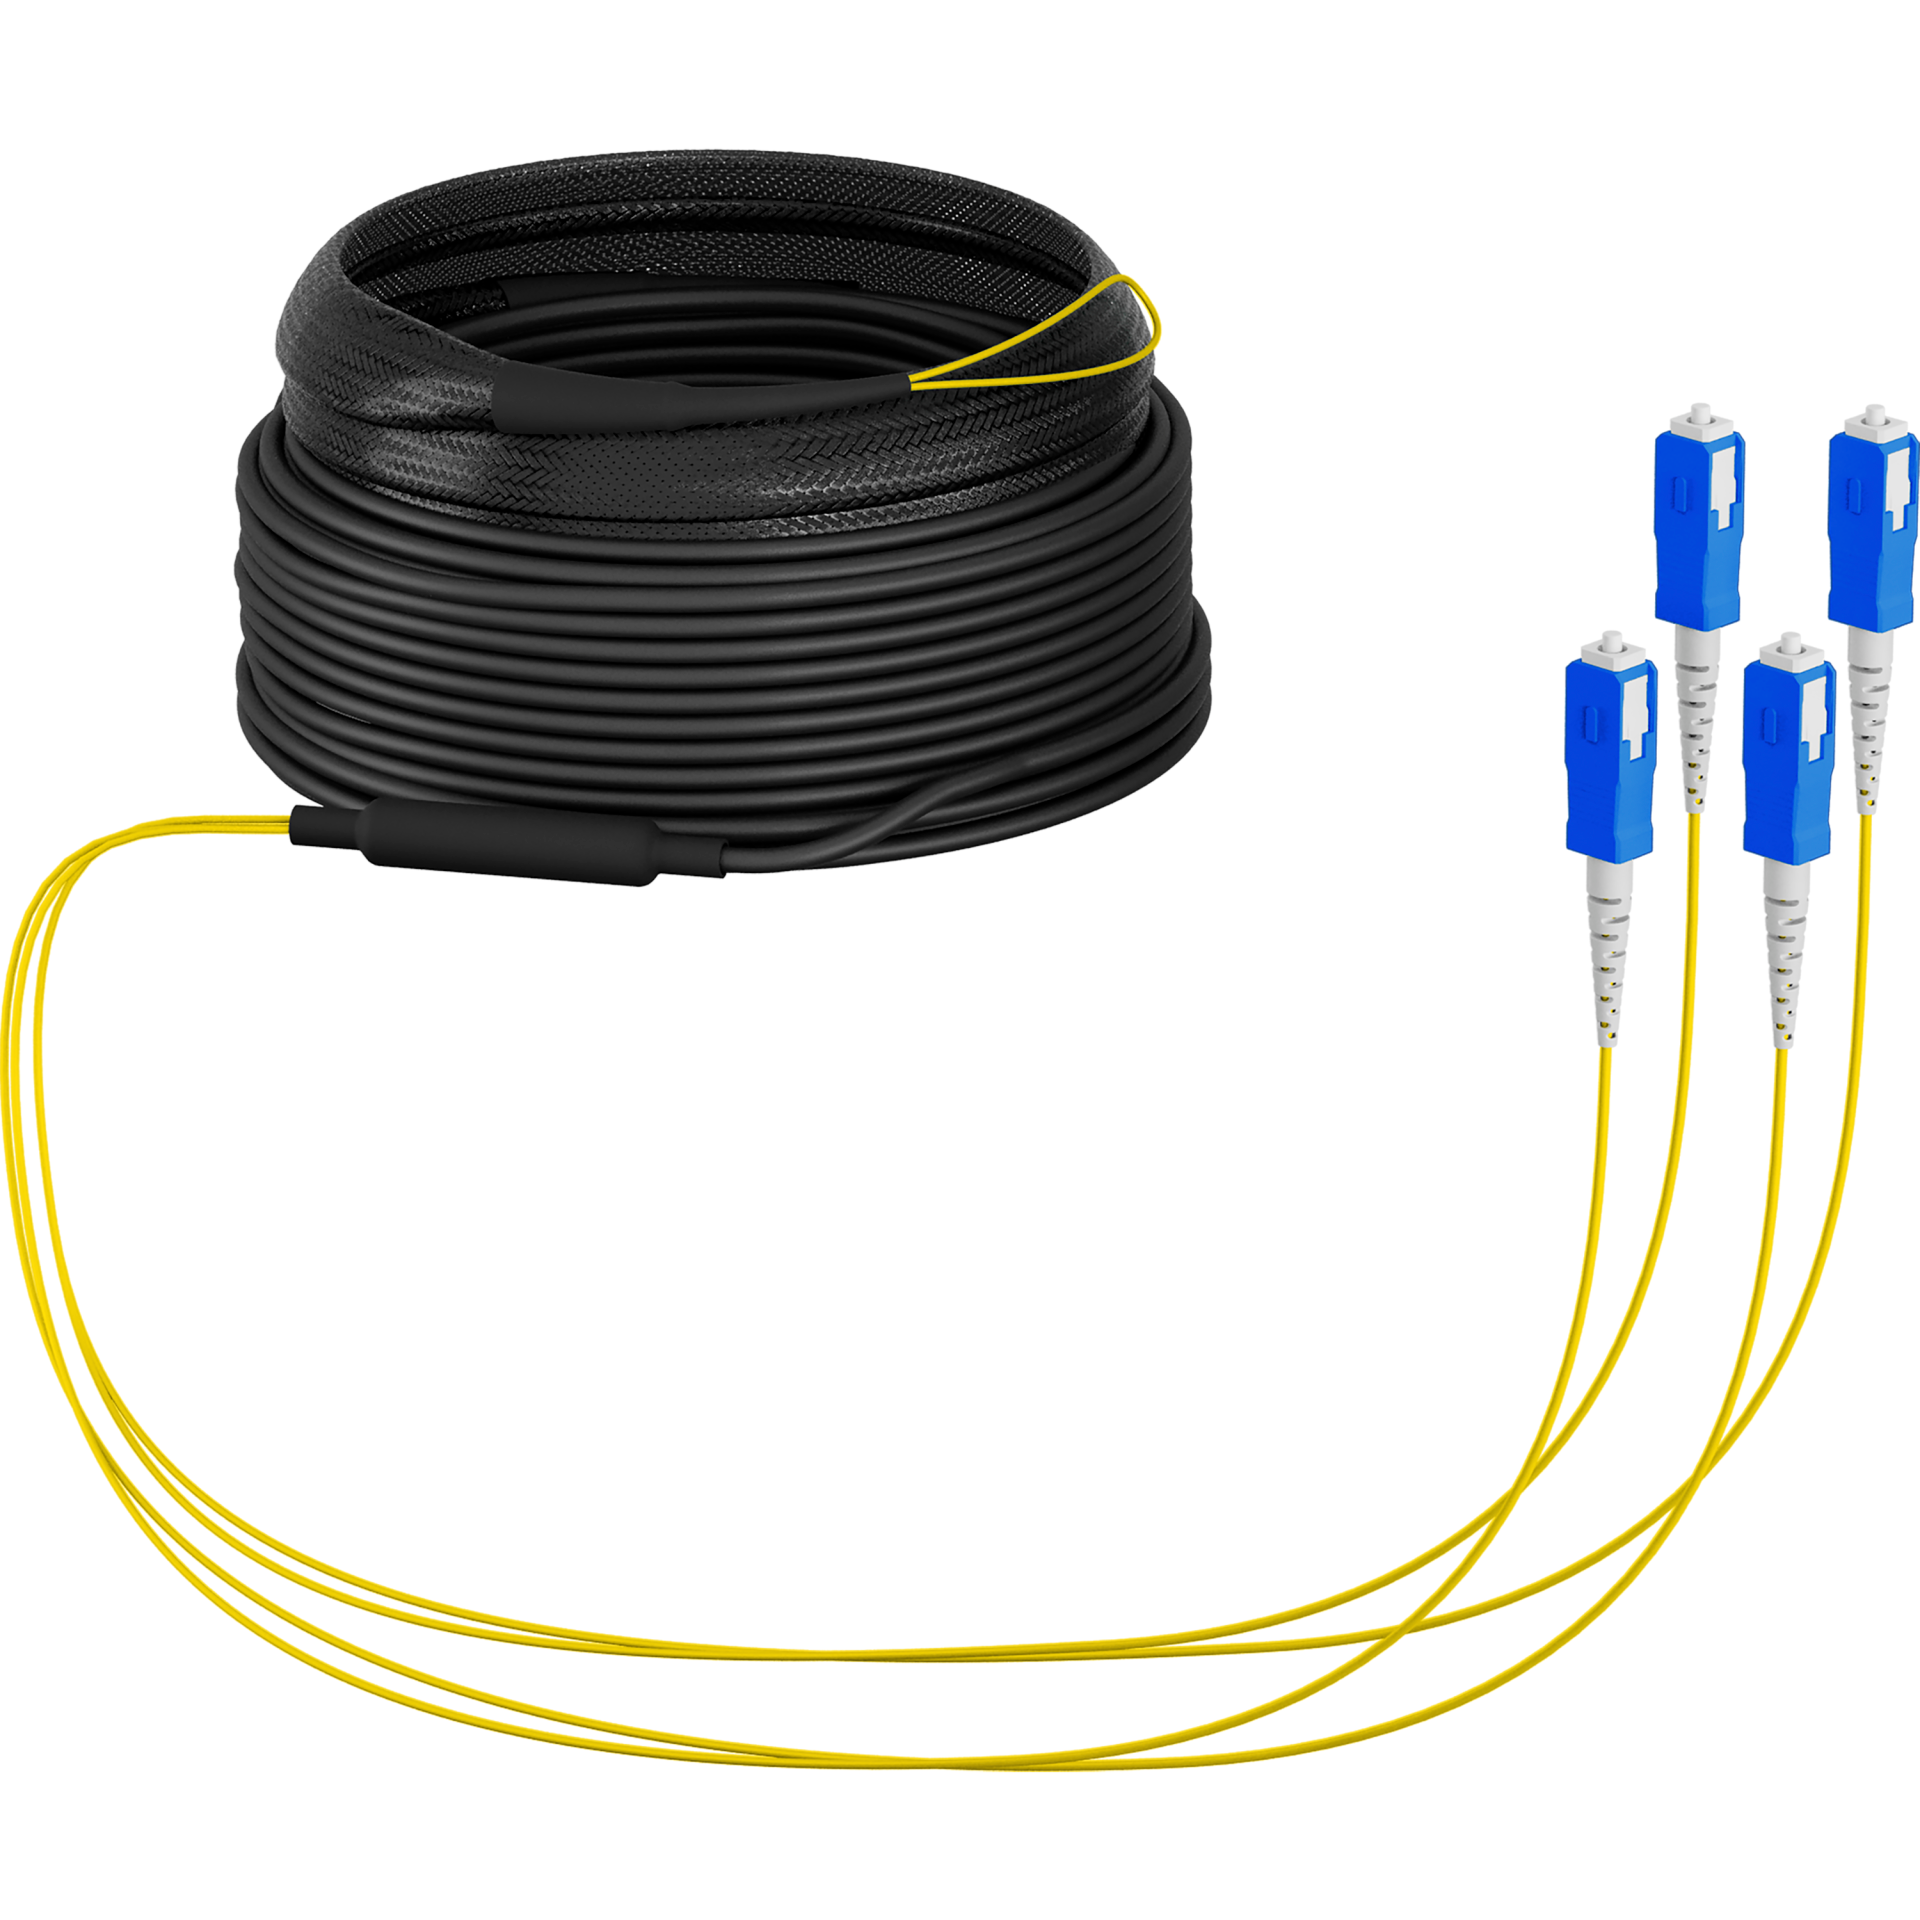 Trunk cable U-DQ(ZN)BH OS2 4E (1x4) SC-SC,20m Dca LSZH